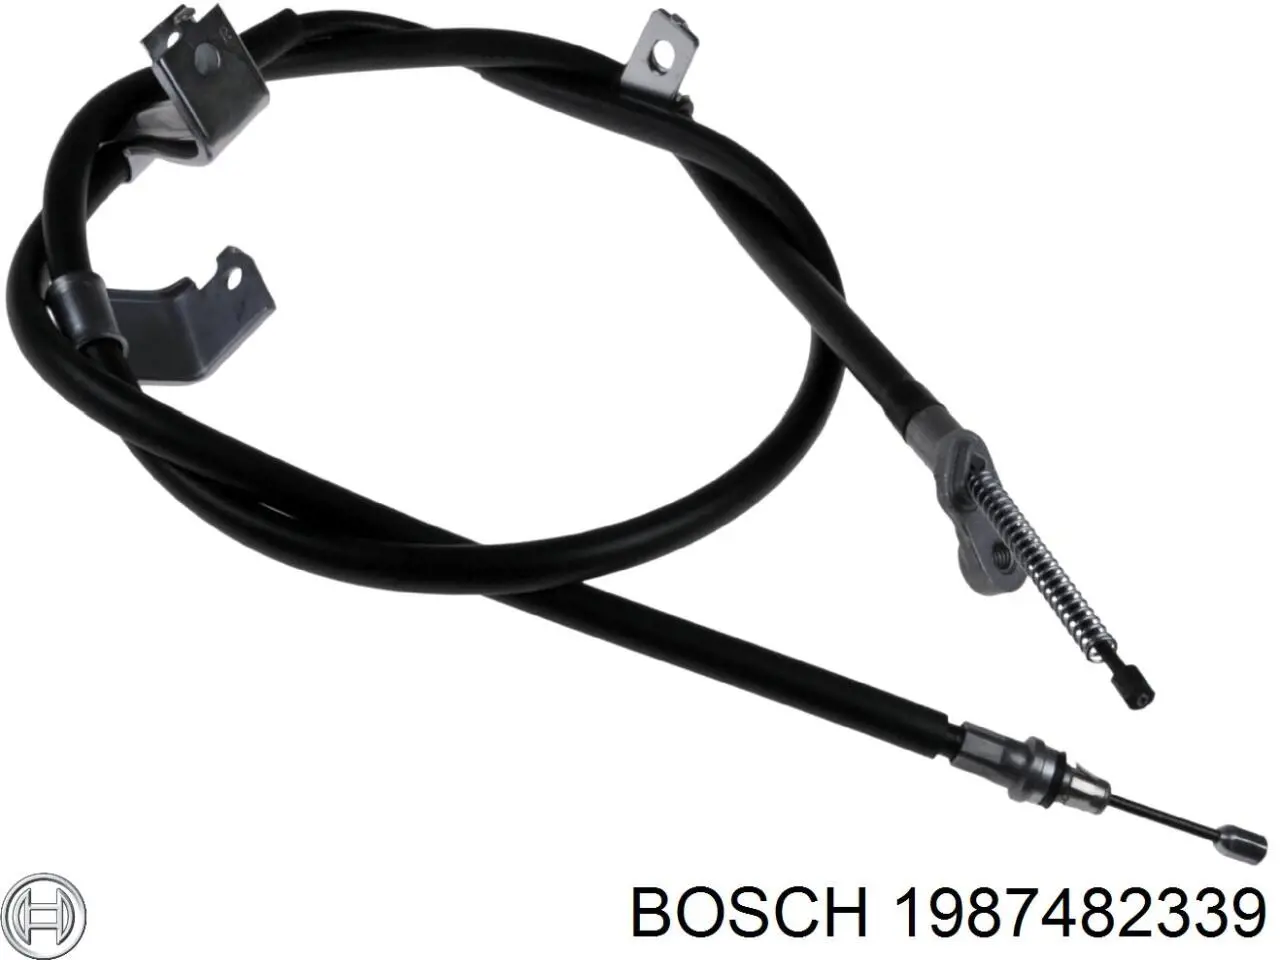 1987482339 Bosch cable de freno de mano trasero derecho